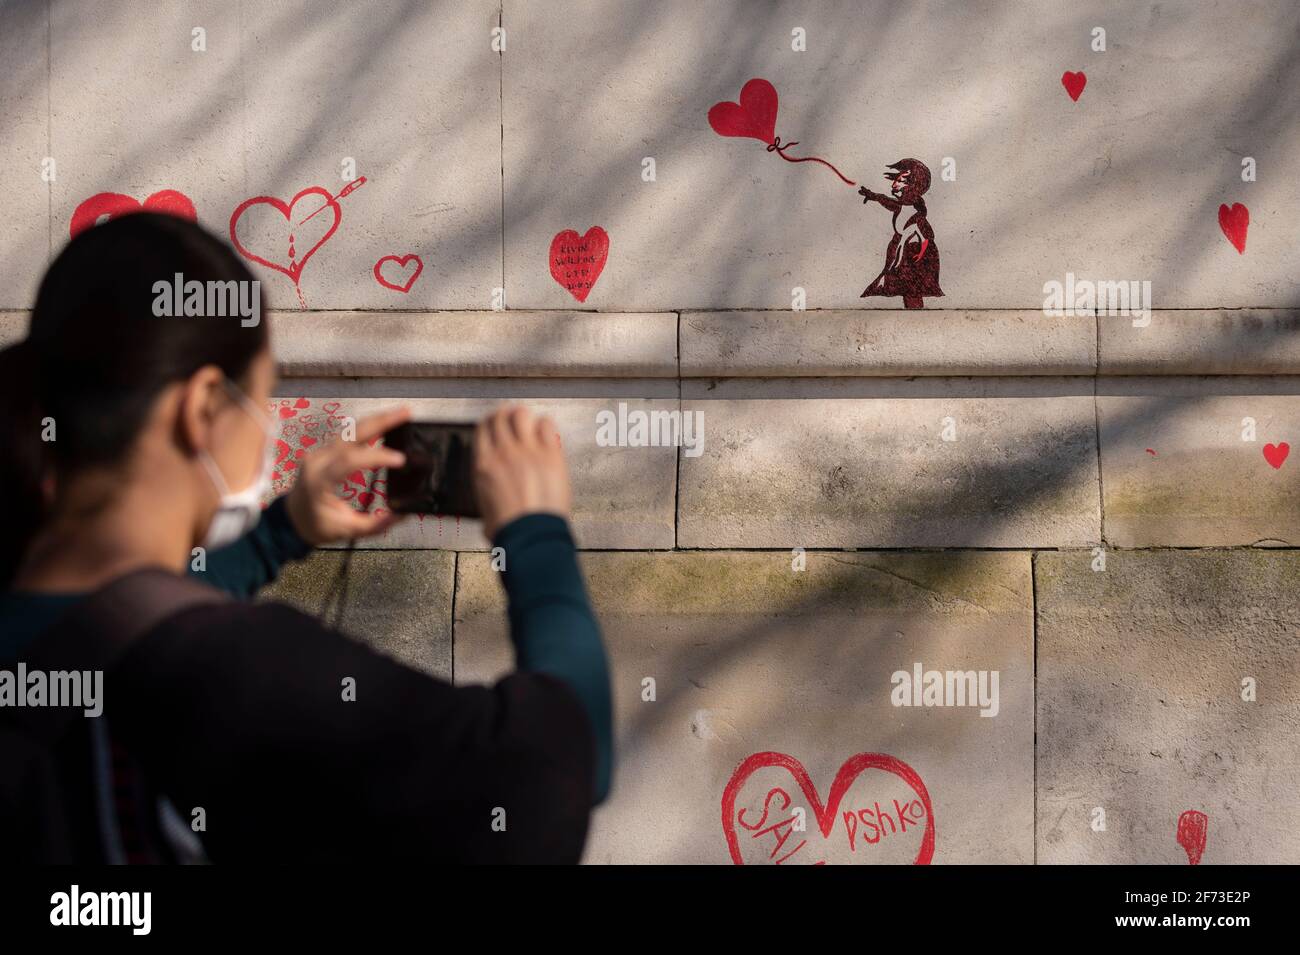 Londres, Royaume-Uni. 4 avril 2021. Le dimanche de Pâques, une femme voit un cœur inspiré par les Banksy sur un mur à Lambeth, près de la Tamise, chaque cœur représentant une personne décédée pendant la pandémie de coronavirus au Royaume-Uni. Appelé le mur commémoratif national Covid, il a été créé par le groupe Covid-19 Bereaved Families for Justice avec des travaux qui débutent il y a une semaine et s'étendra sur un demi-mile à la fin. Credit: Stephen Chung / Alamy Live News Banque D'Images